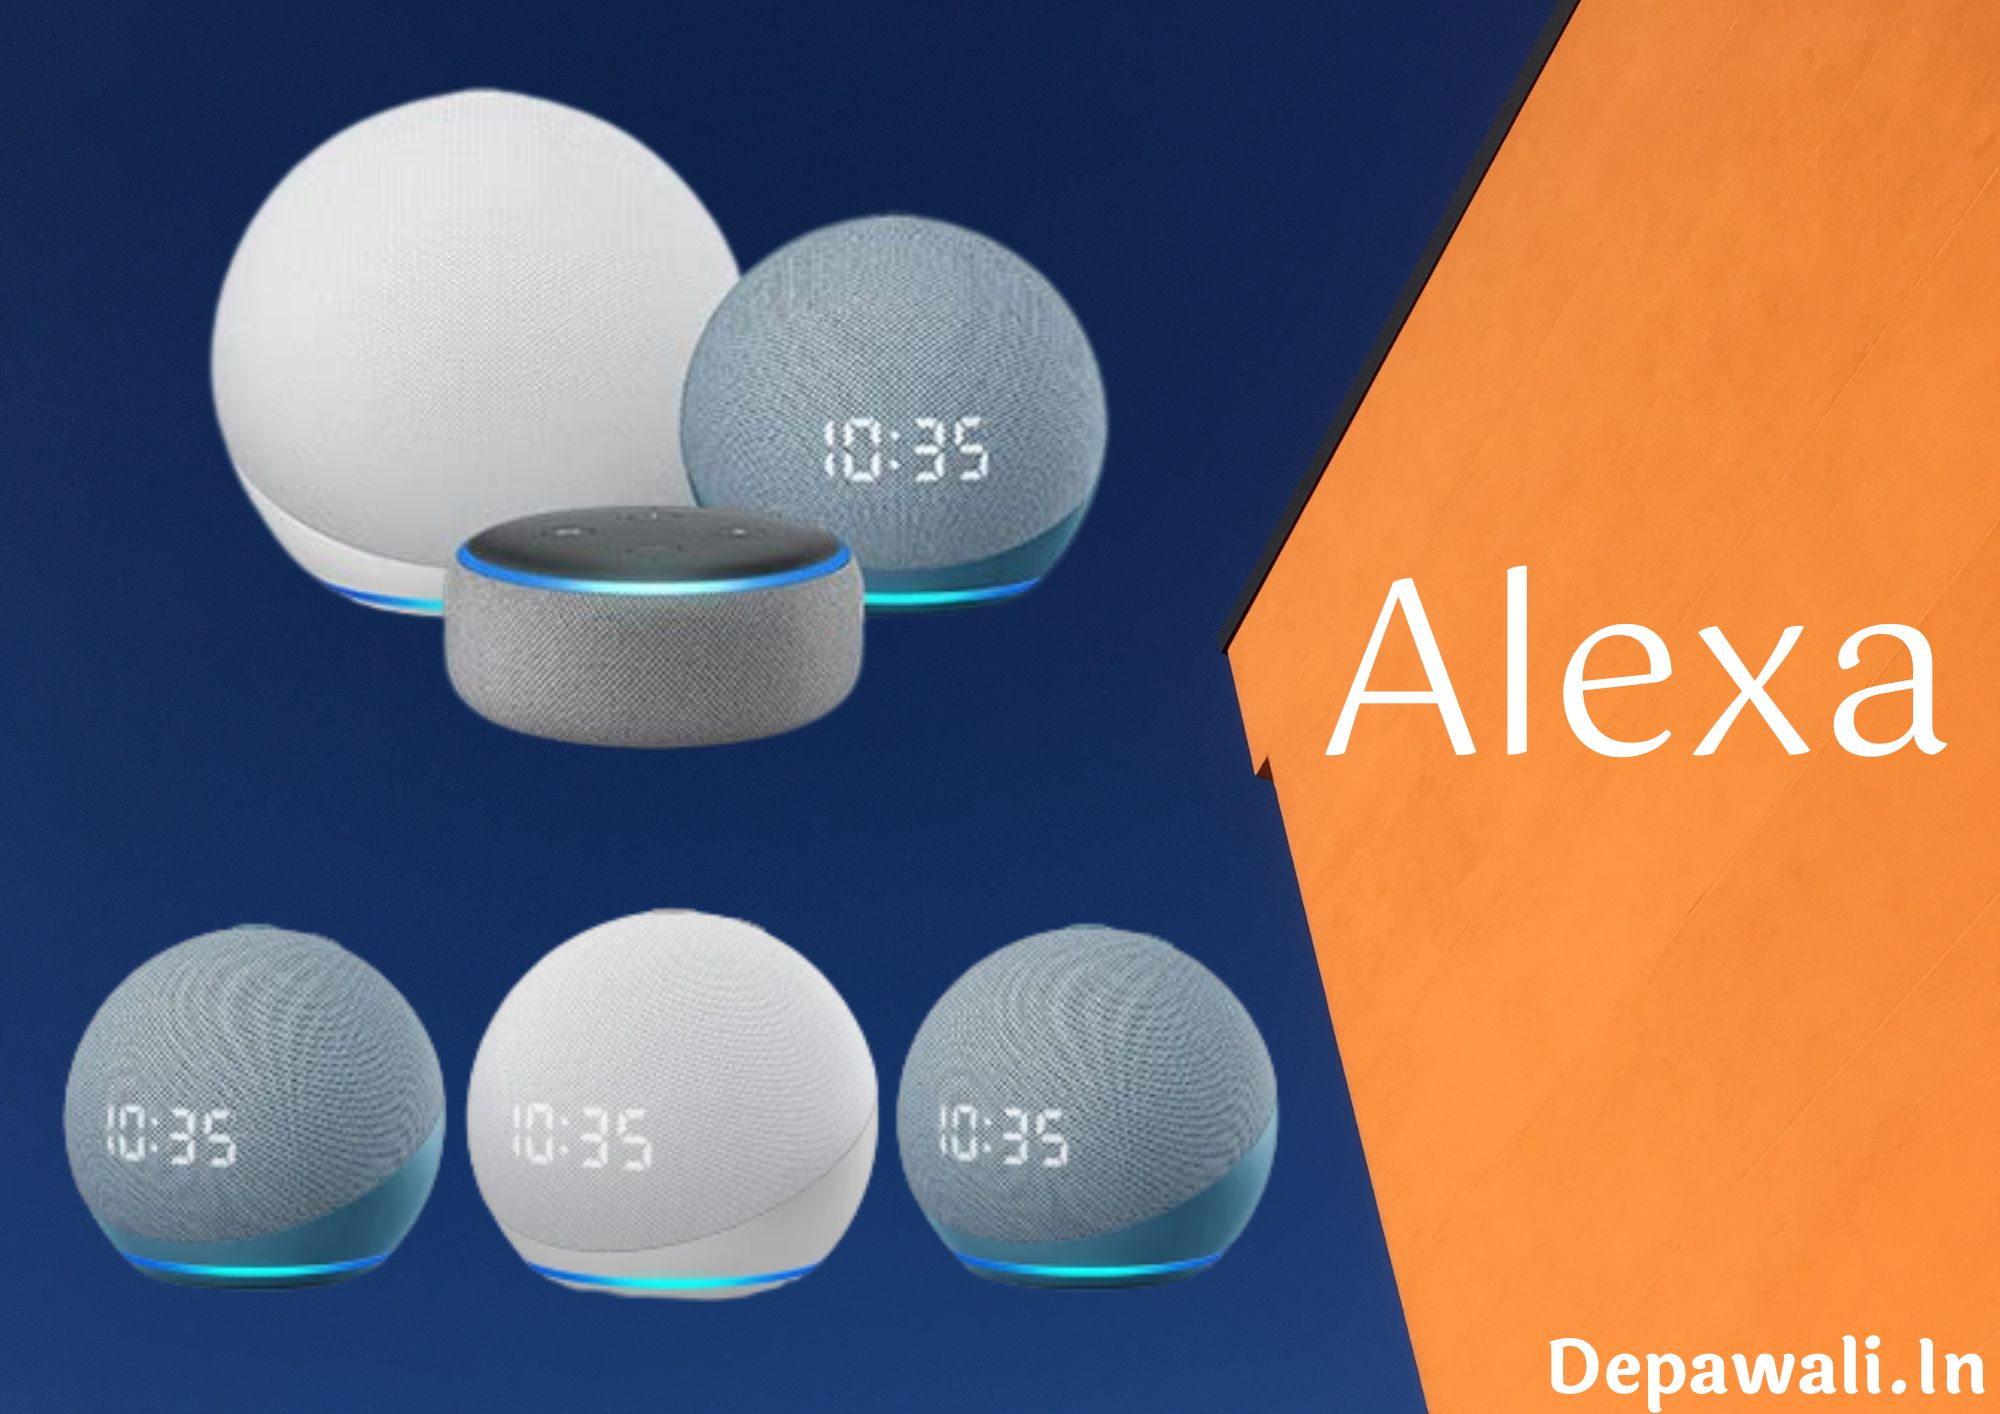 एलेक्सा क्या है, फ्री में कैसे करे इसका इस्तेमाल - Amazon Alexa In Hindi